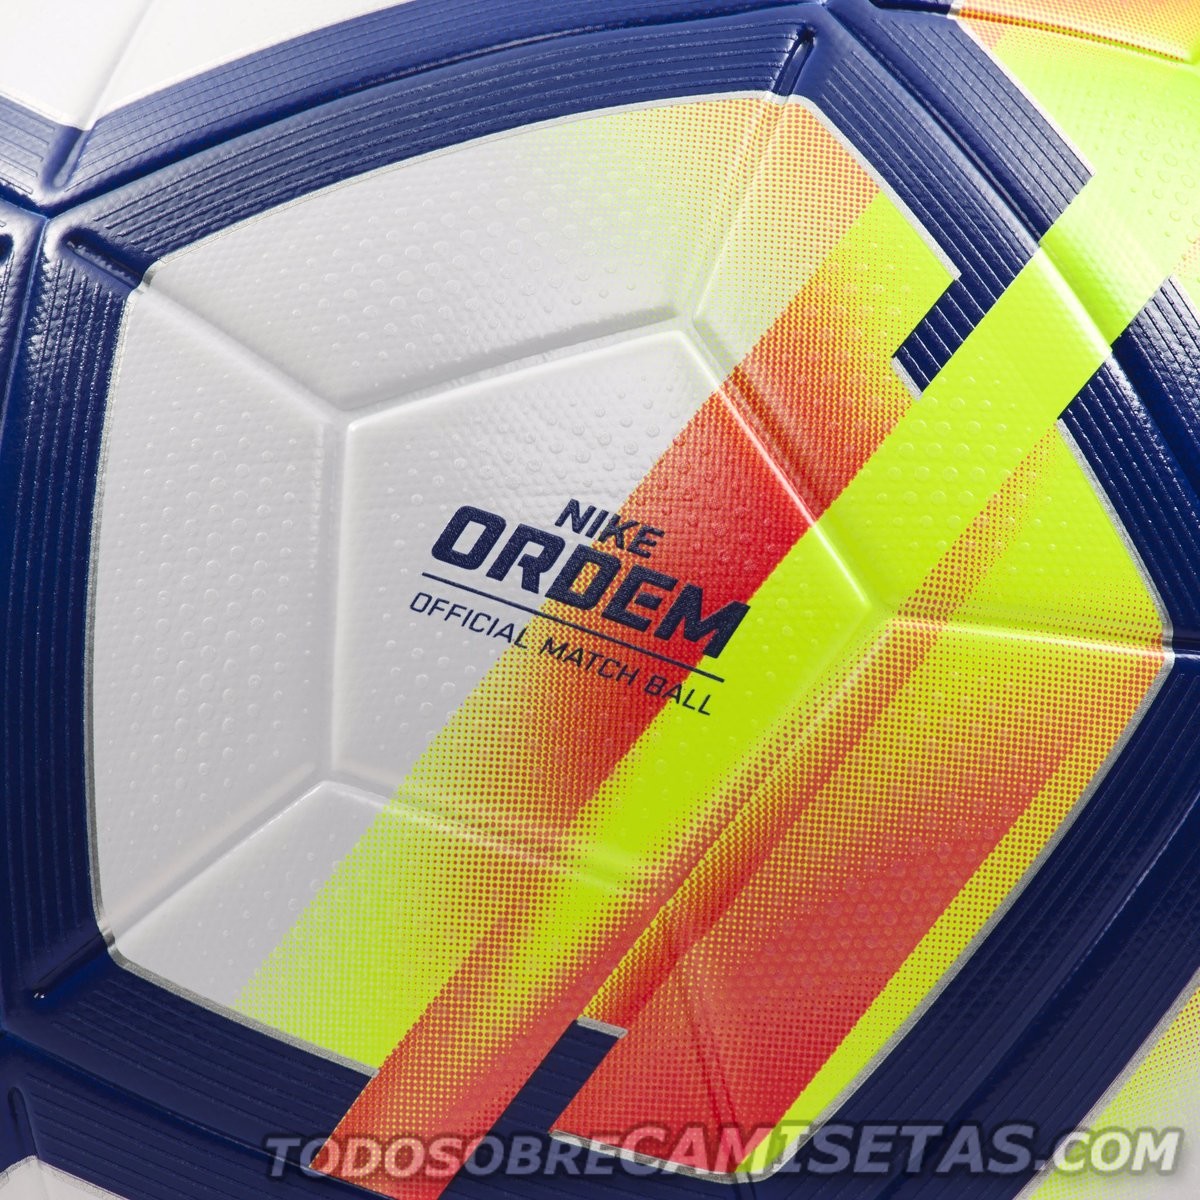 Nike Ordem V Premier League 2017-18 Ball